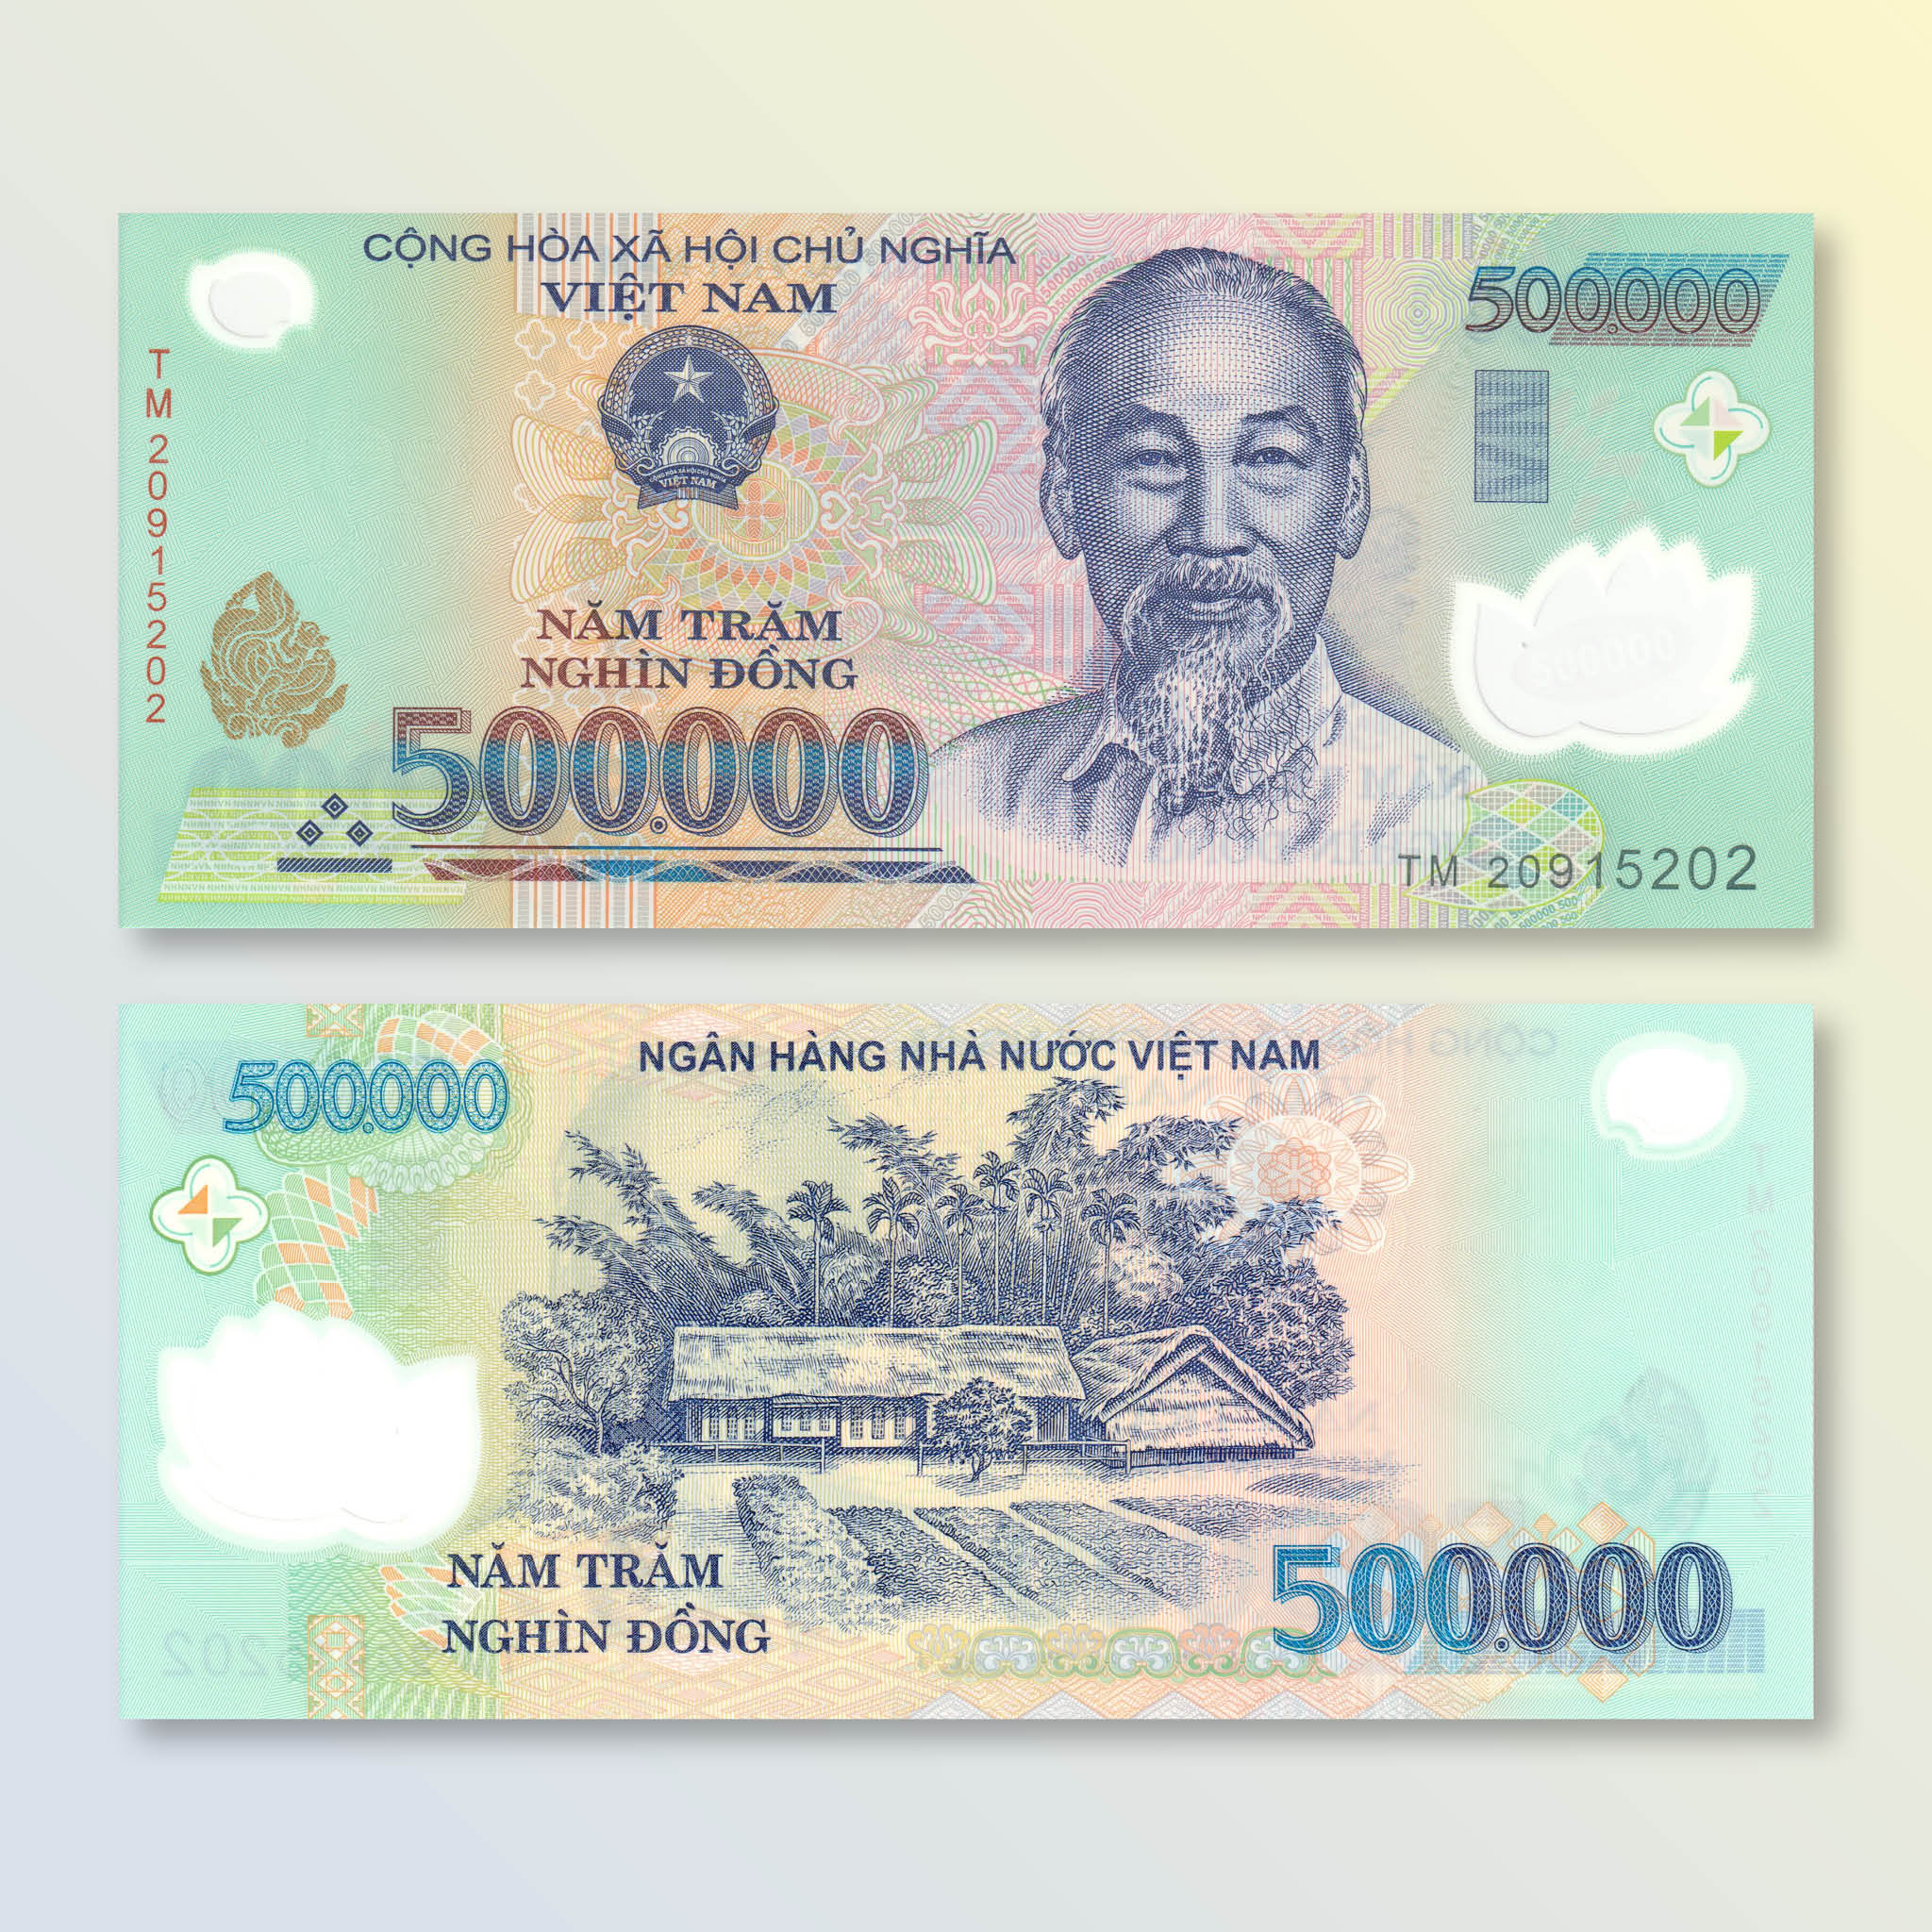 Vietnam 500000 Dong, 2020, B348p, P124, UNC - Robert's World Money - World Banknotes